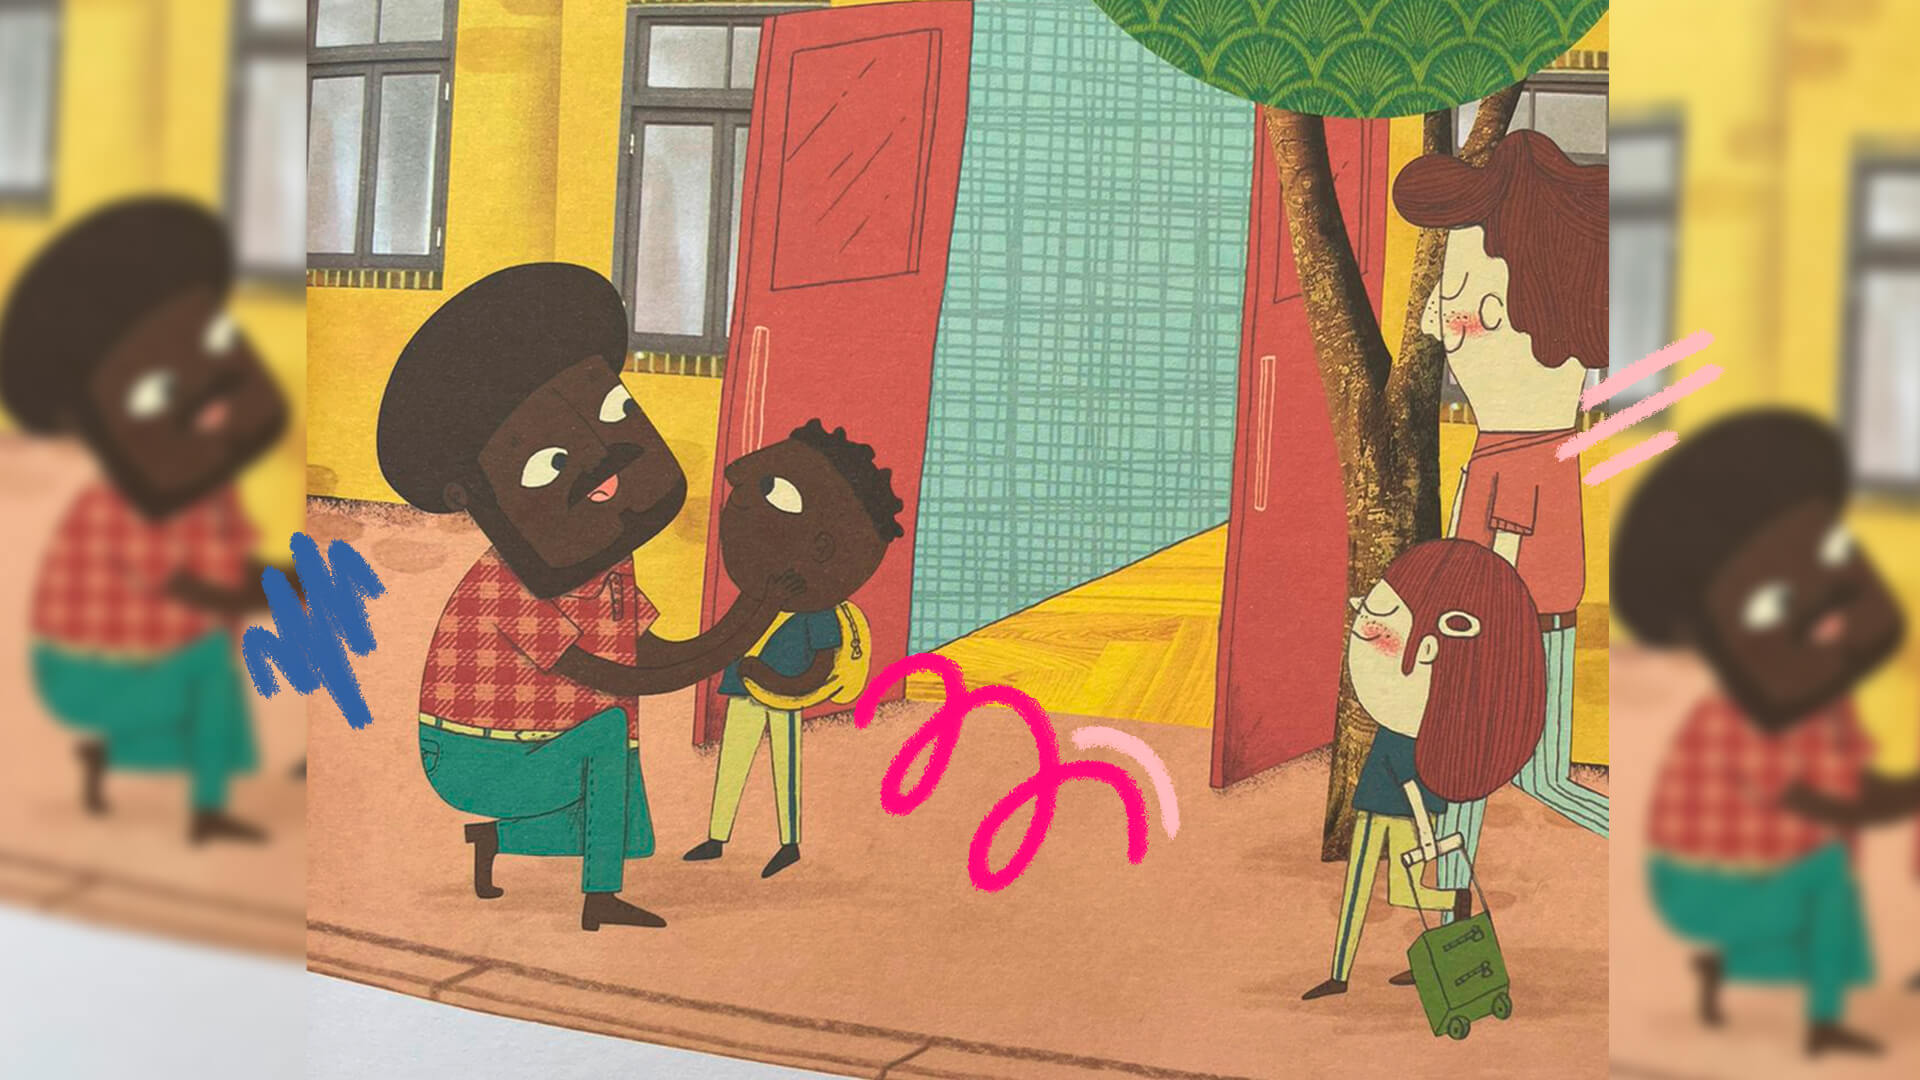 Ilustração do livro Quinzinho em que um adulto. ajoelhado, interage com uma criança. Ambos são negros.